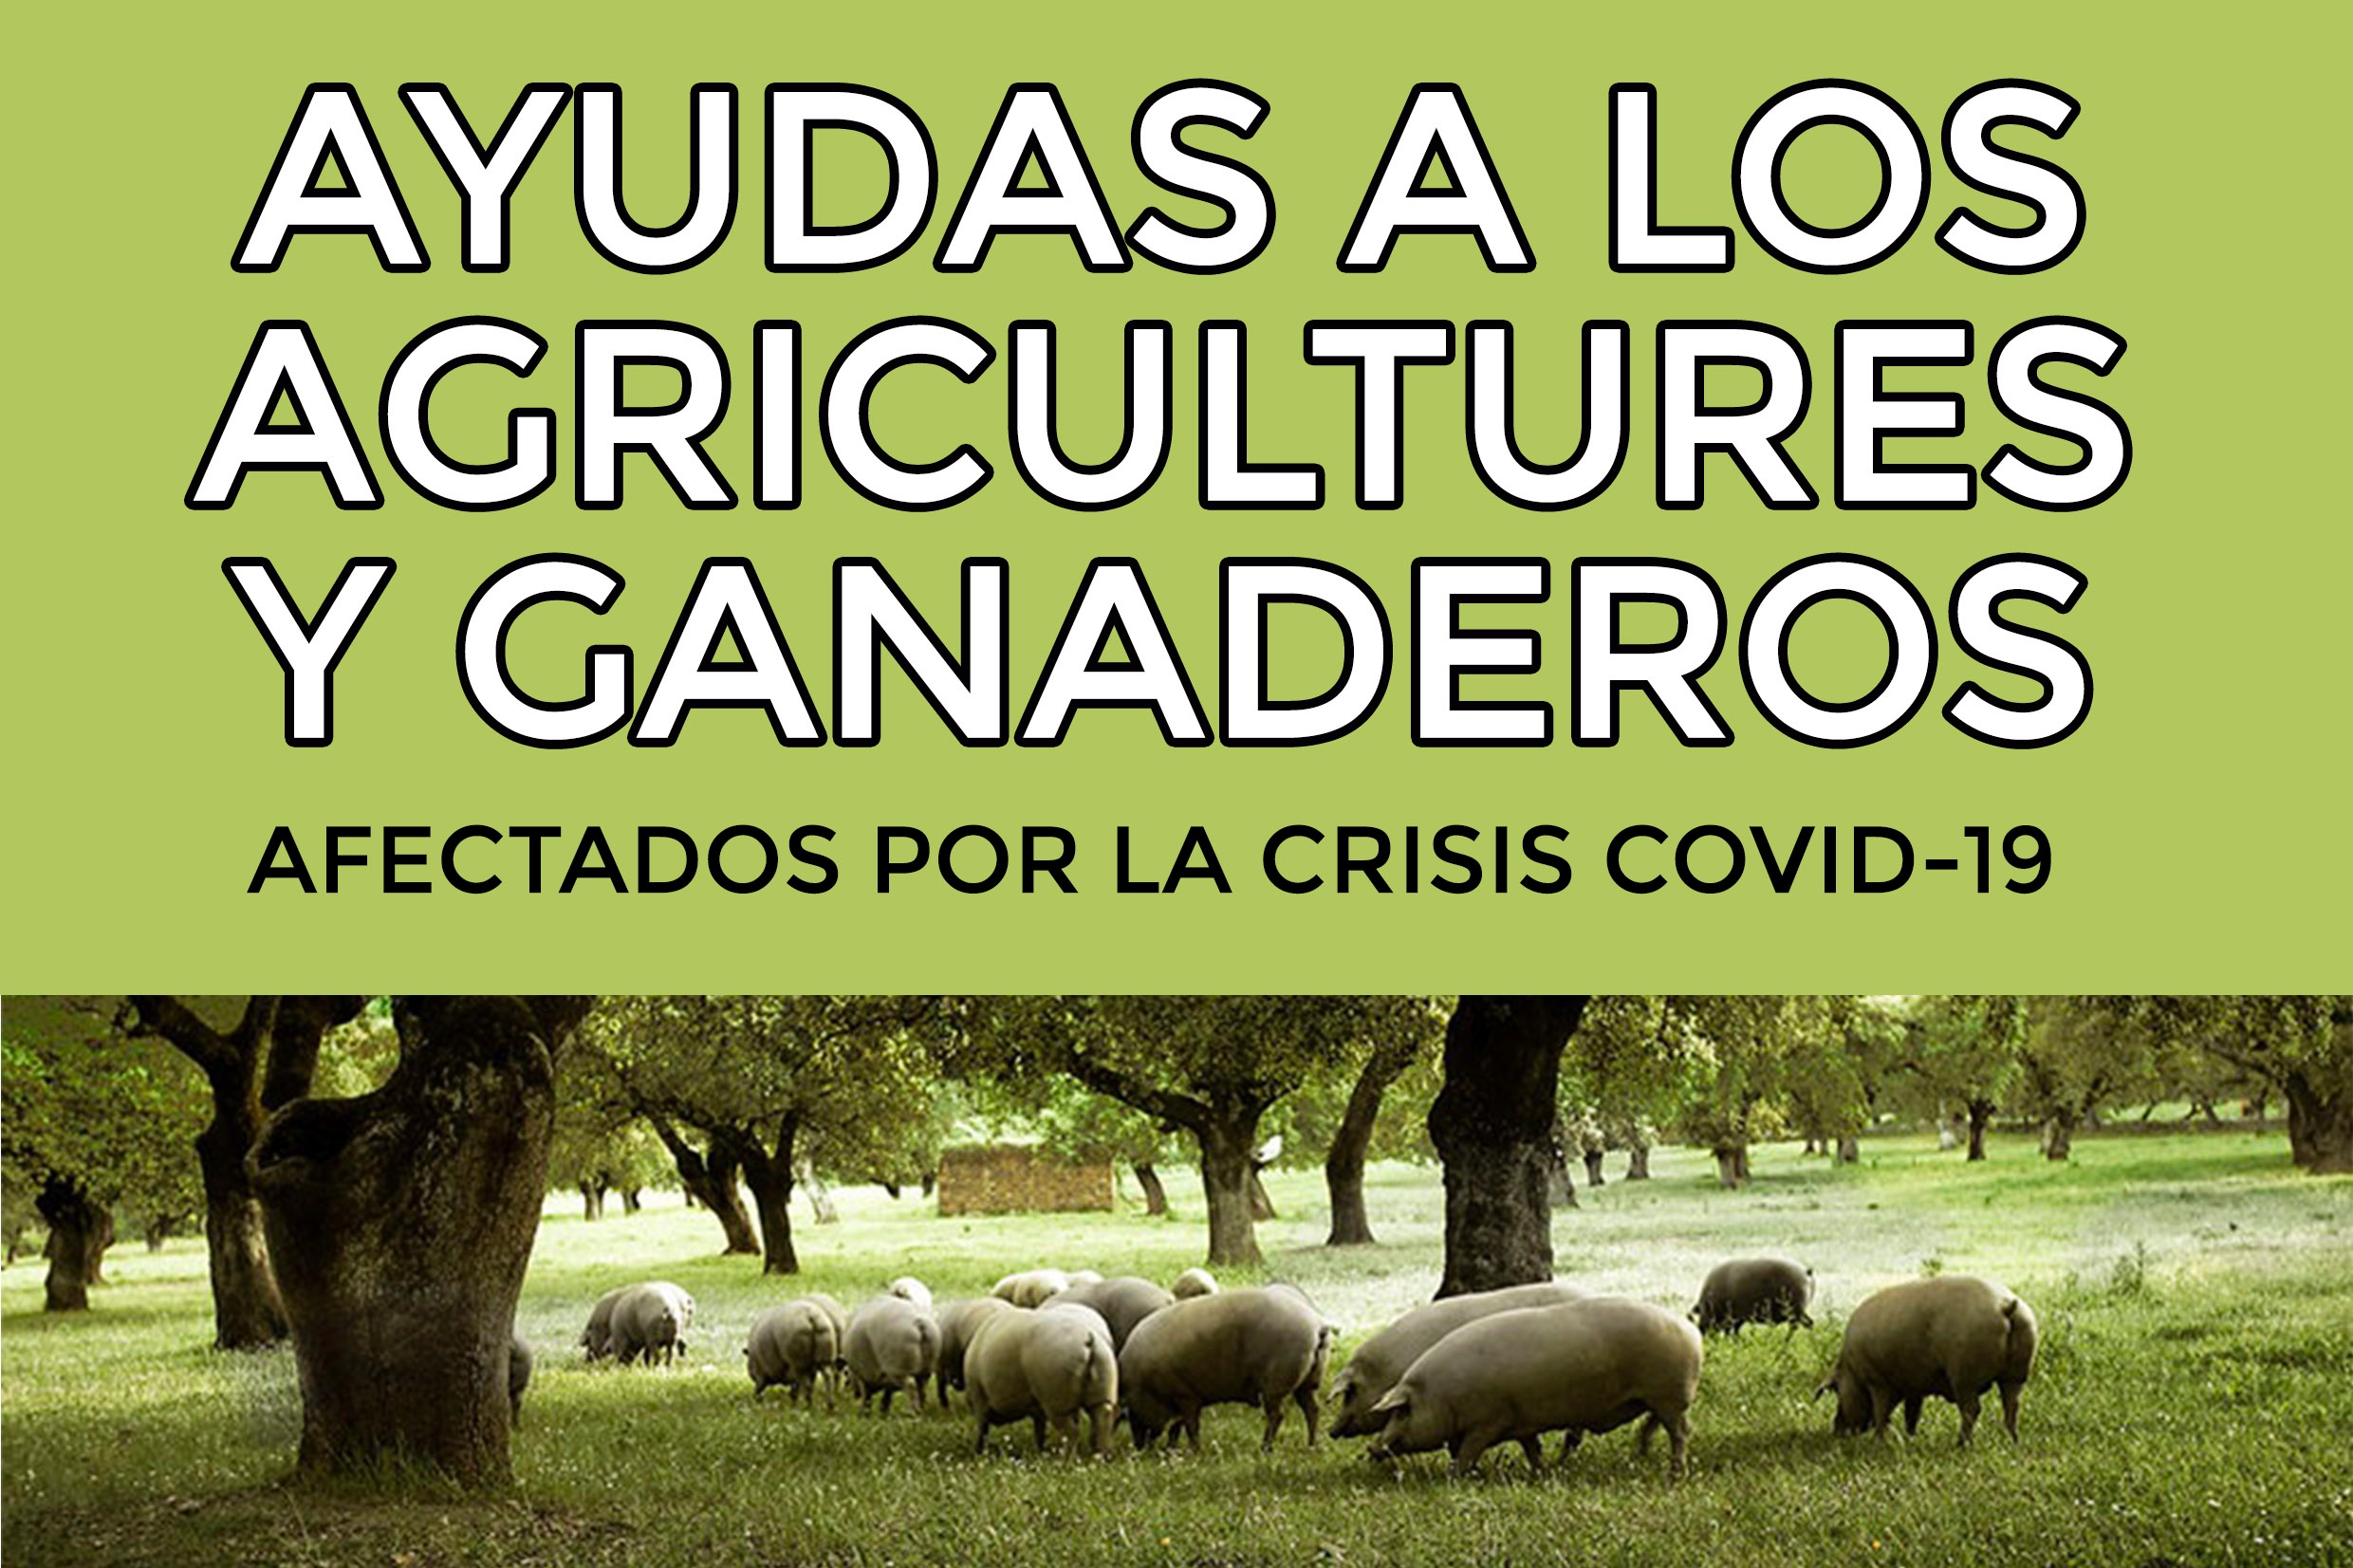 AYUDAS GANADEROS Y AGRICULTORES 4